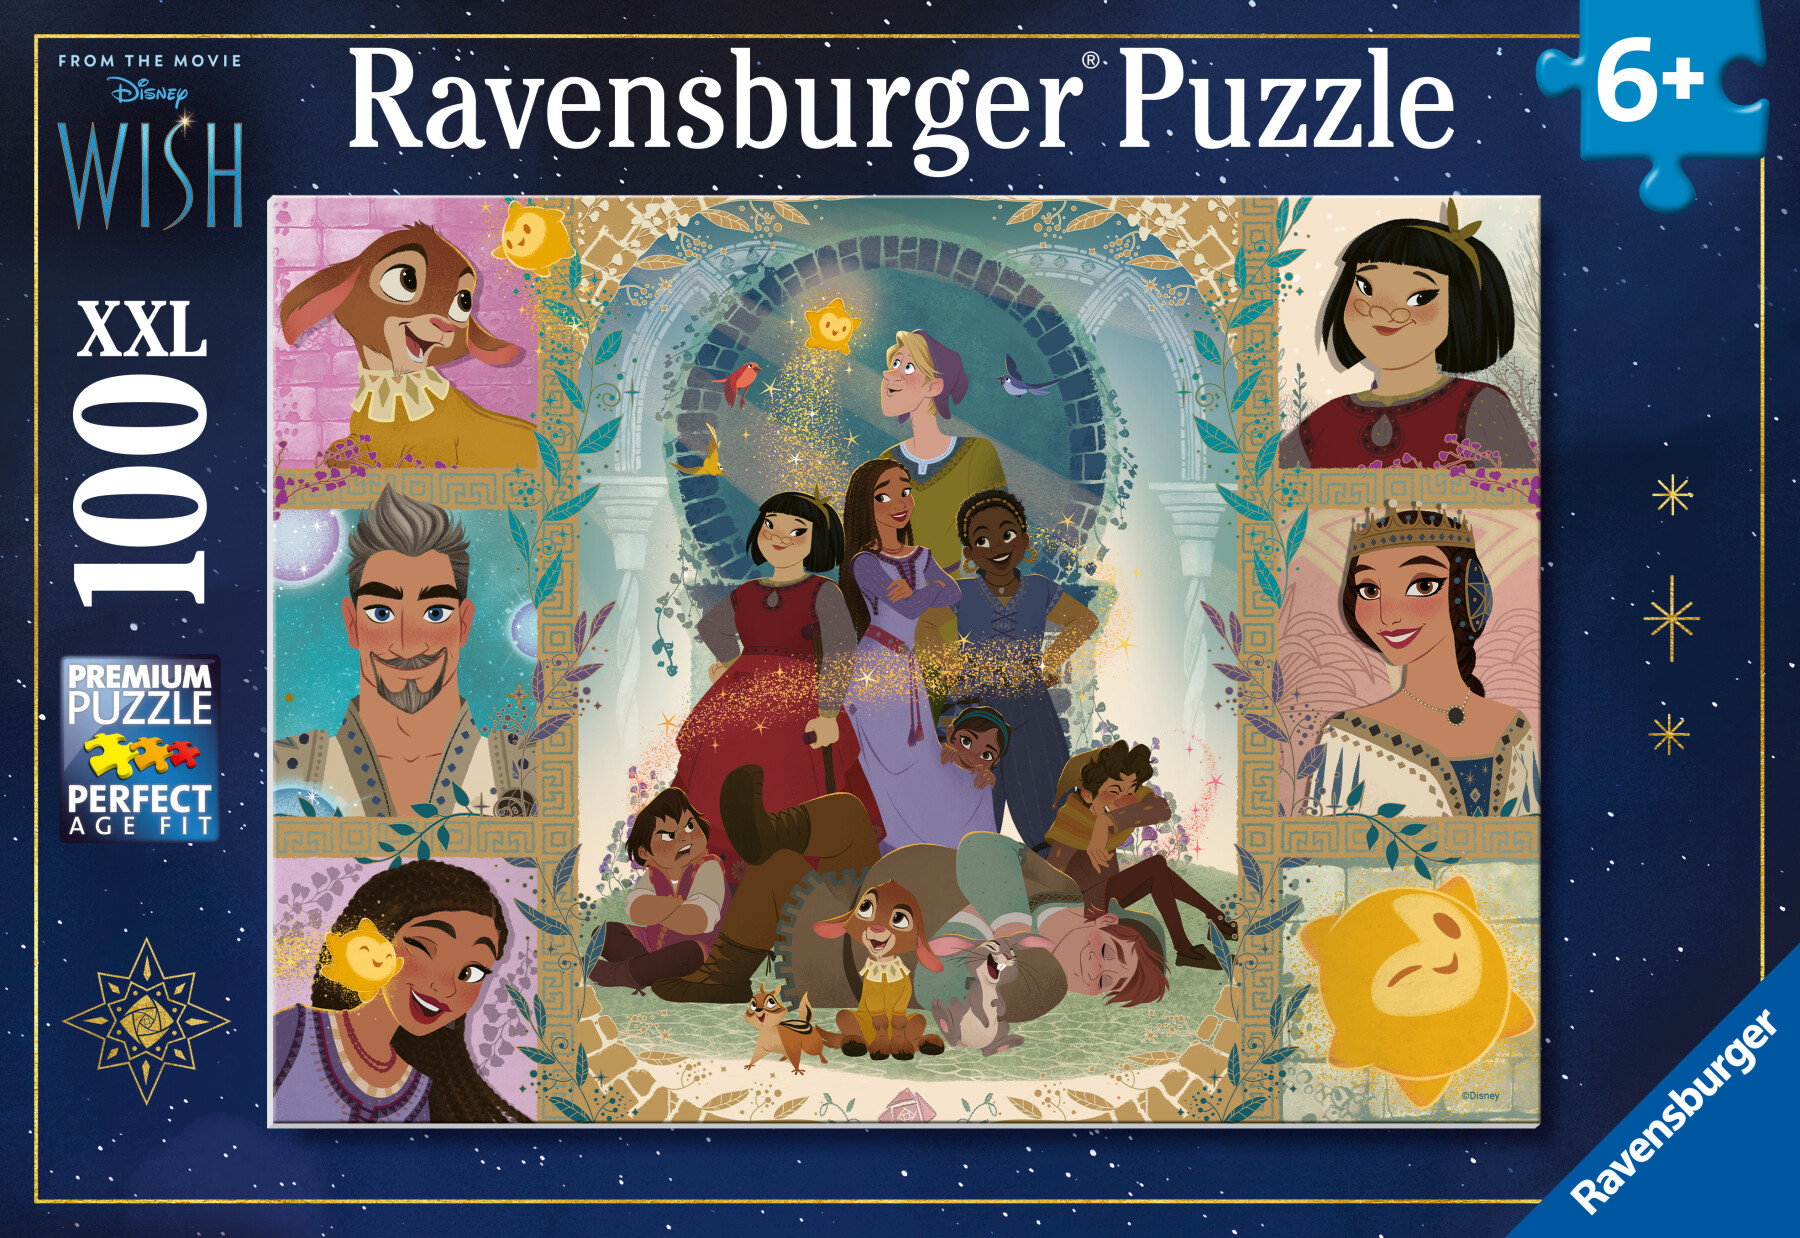 Ravensburger - puzzle wish 100 pezzi xxl, età raccomandata 6+ anni - DISNEY PRINCESS, RAVENSBURGER